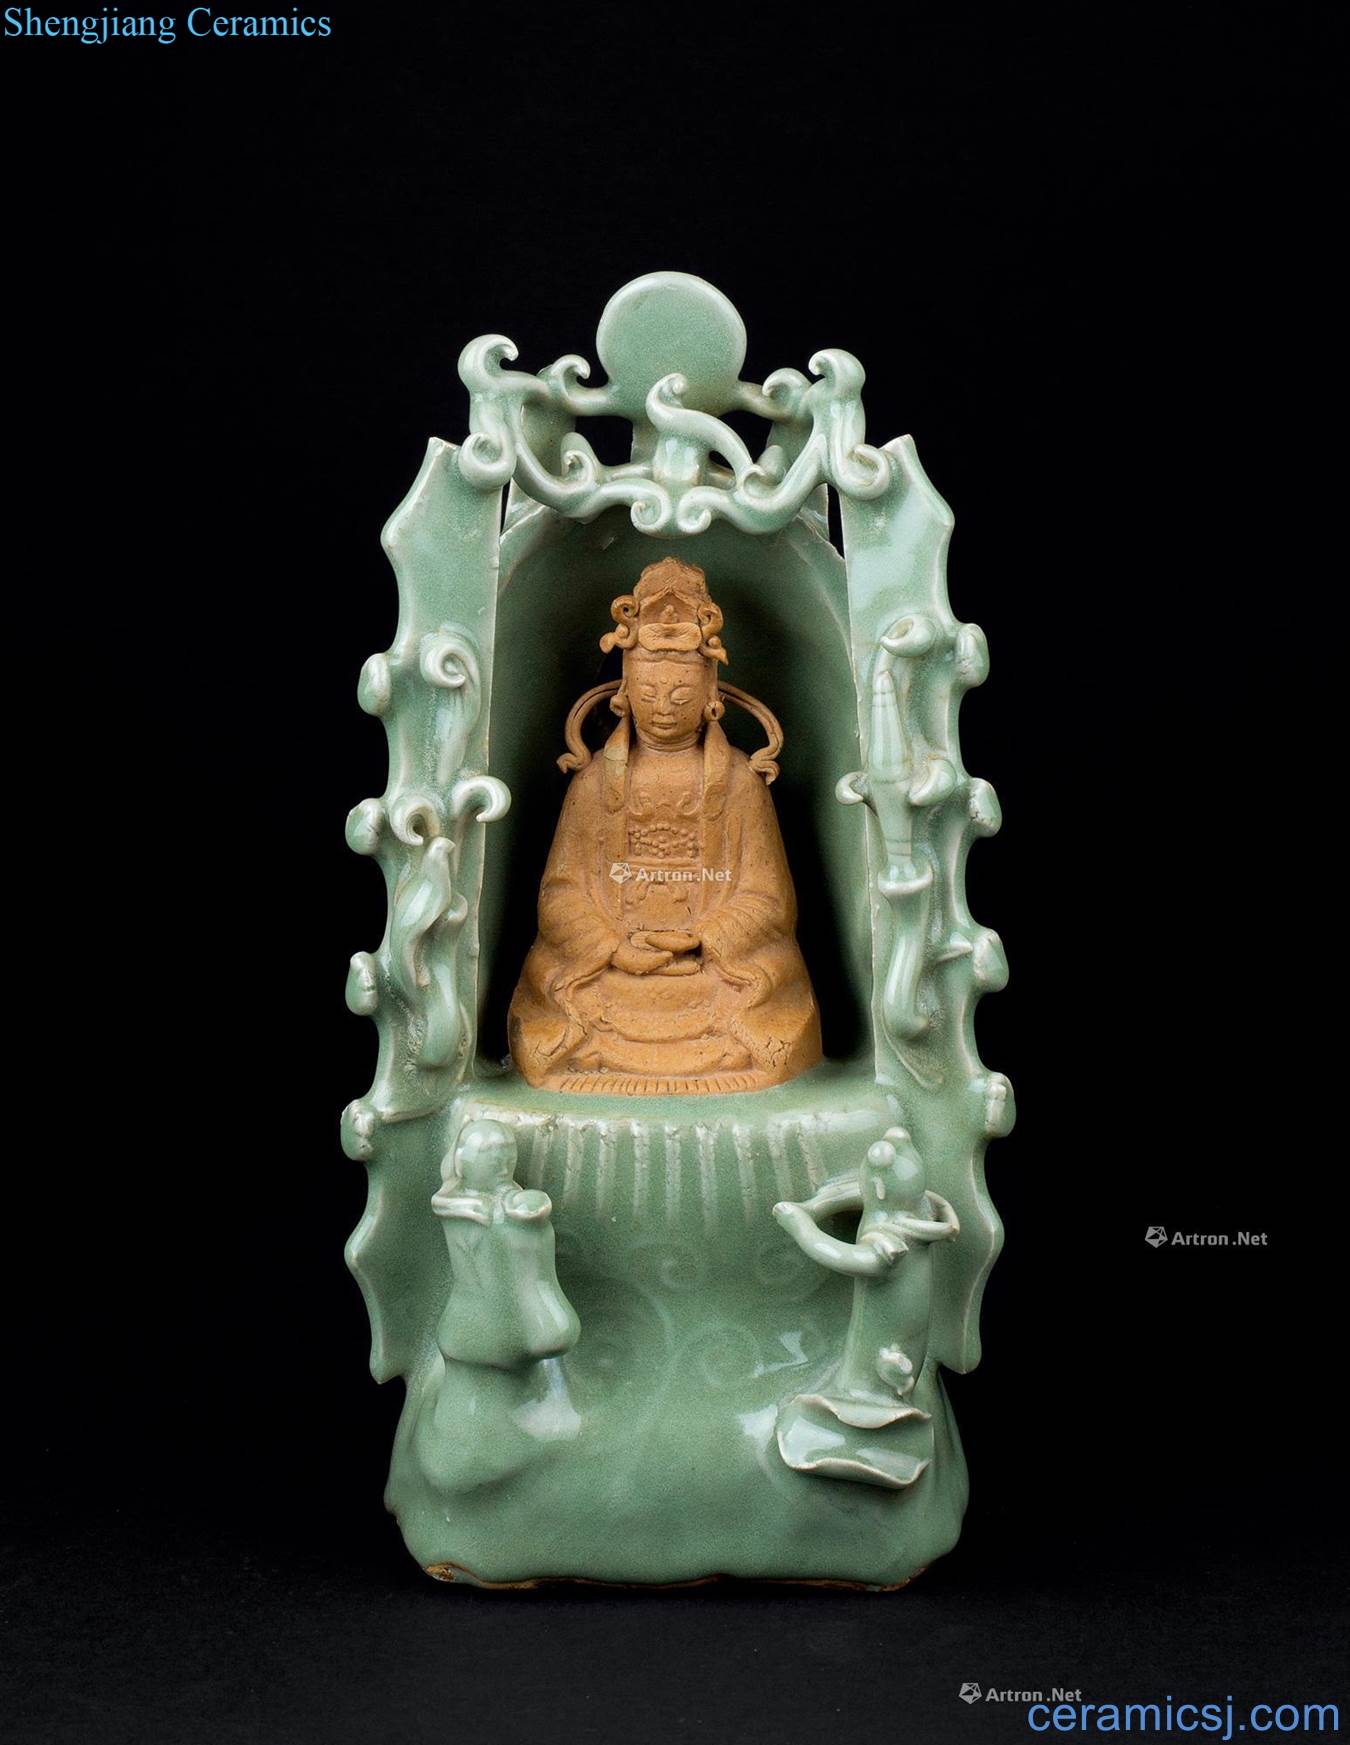 In the Ming dynasty (1368-1644), longquan celadon Lou guan Yin